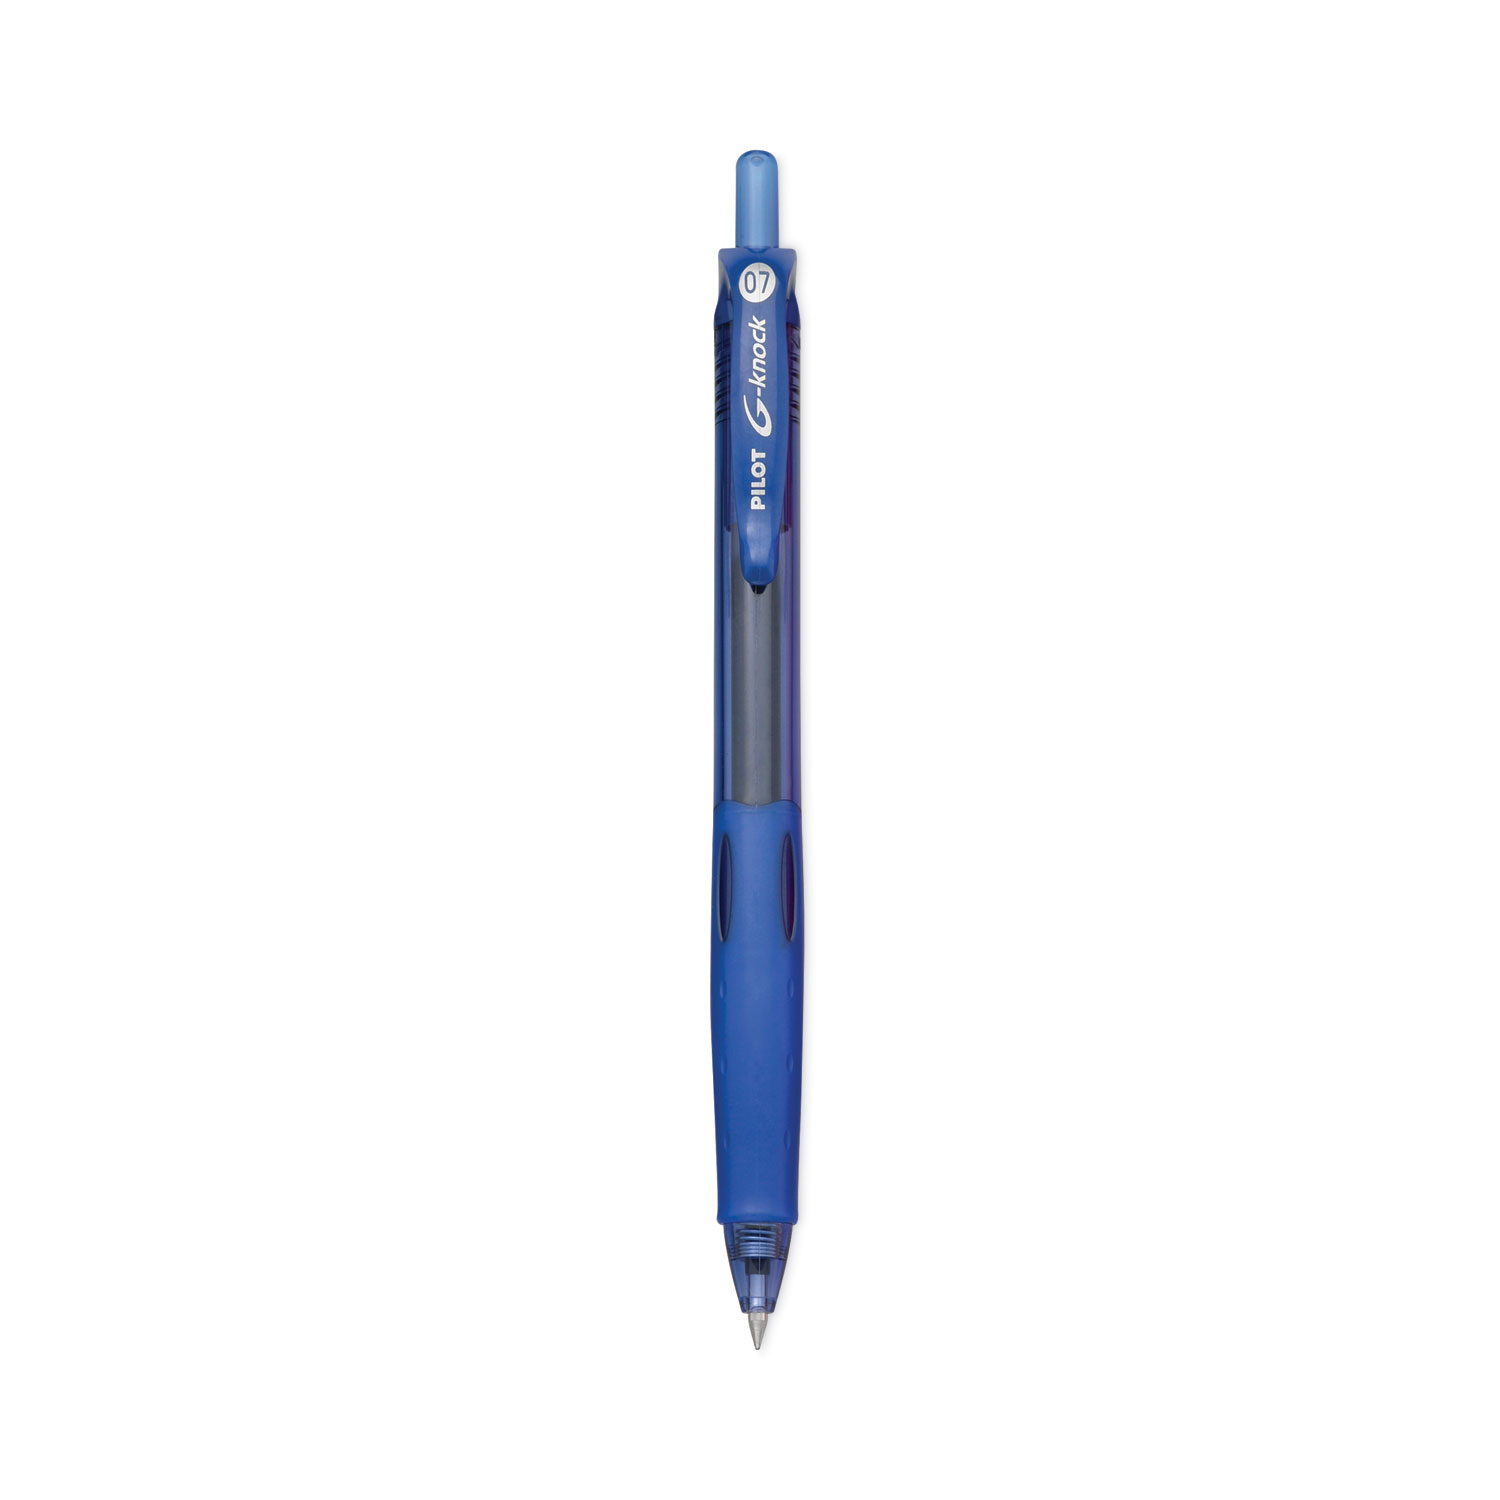 Pilot® Refill for Pilot G2 Gel Ink Pens, Bold Conical Tip, Black Ink, 2/Pack